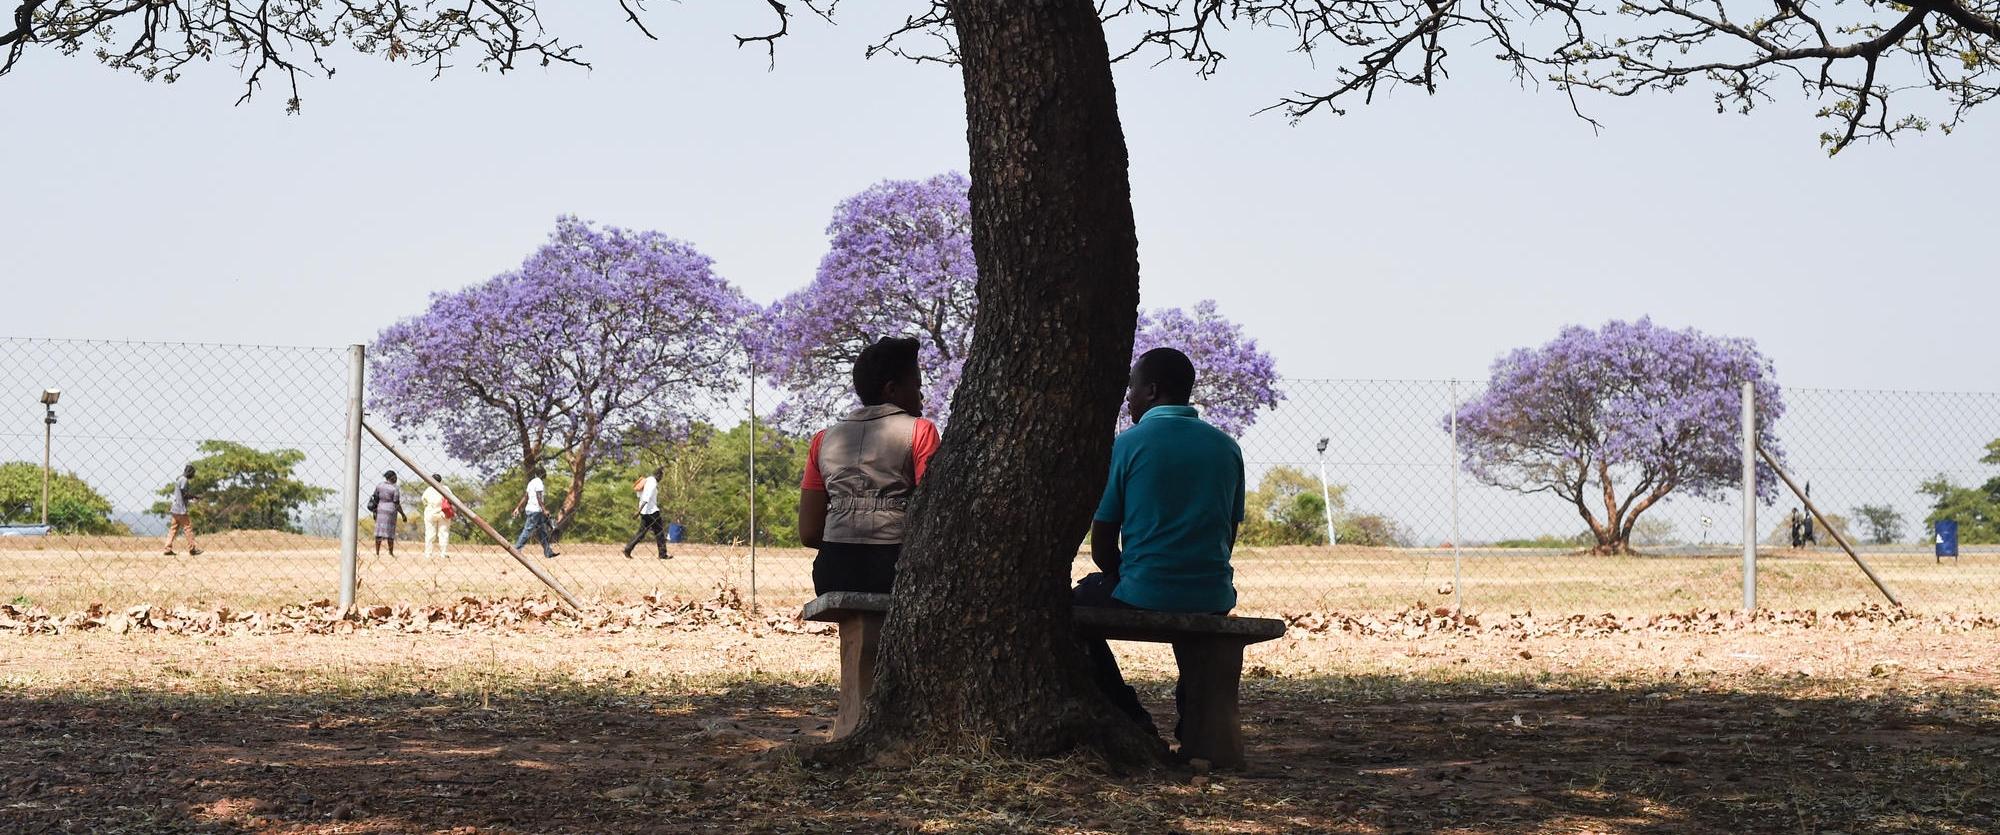 Séance de conseil dans la cour de l'unité psychiatrique. À l'hôpital psychiatrique de Harare, au Zimbabwe, l'équipe fournit des traitements et des soins aux patients atteints de maladie mentale. L'équipe offre également un soutien psychologique aux patients, aux parents et aux autres membres de la famille.